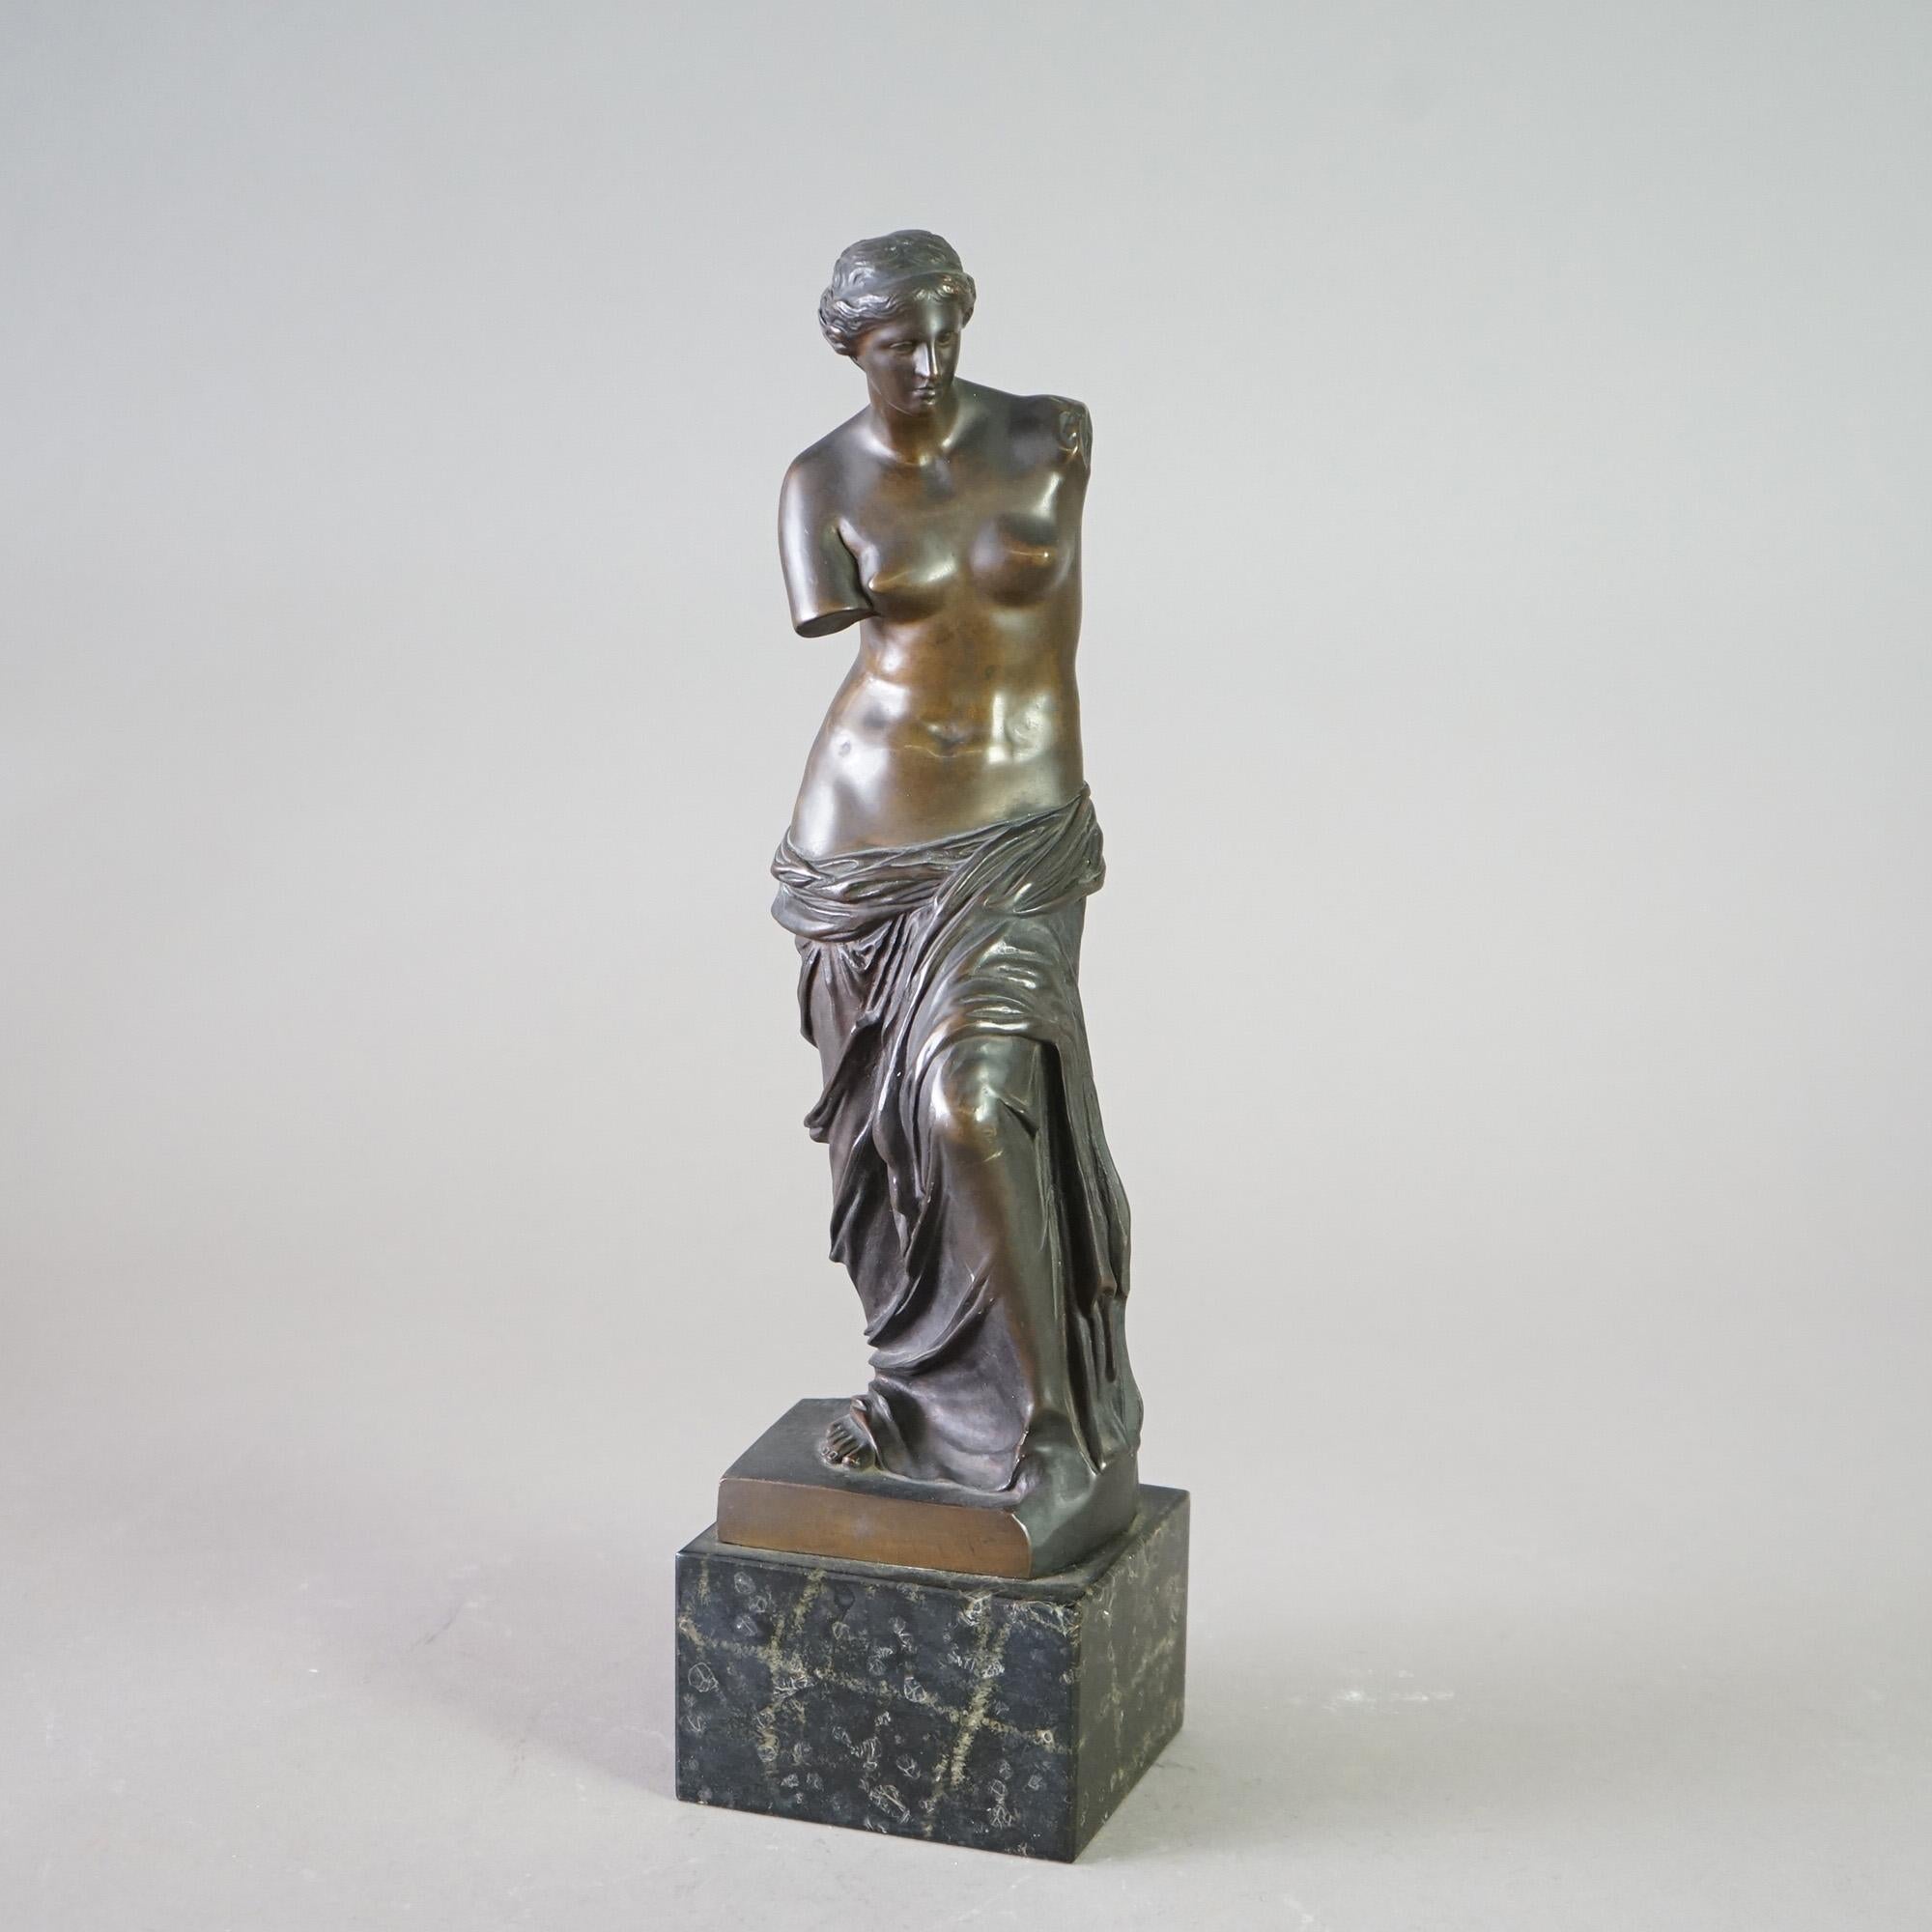 Antique Venus De Milo Bronze Sculpture on Black Marble Plinth, Foundry Mark as Photographed, 19th C

Measures - 16